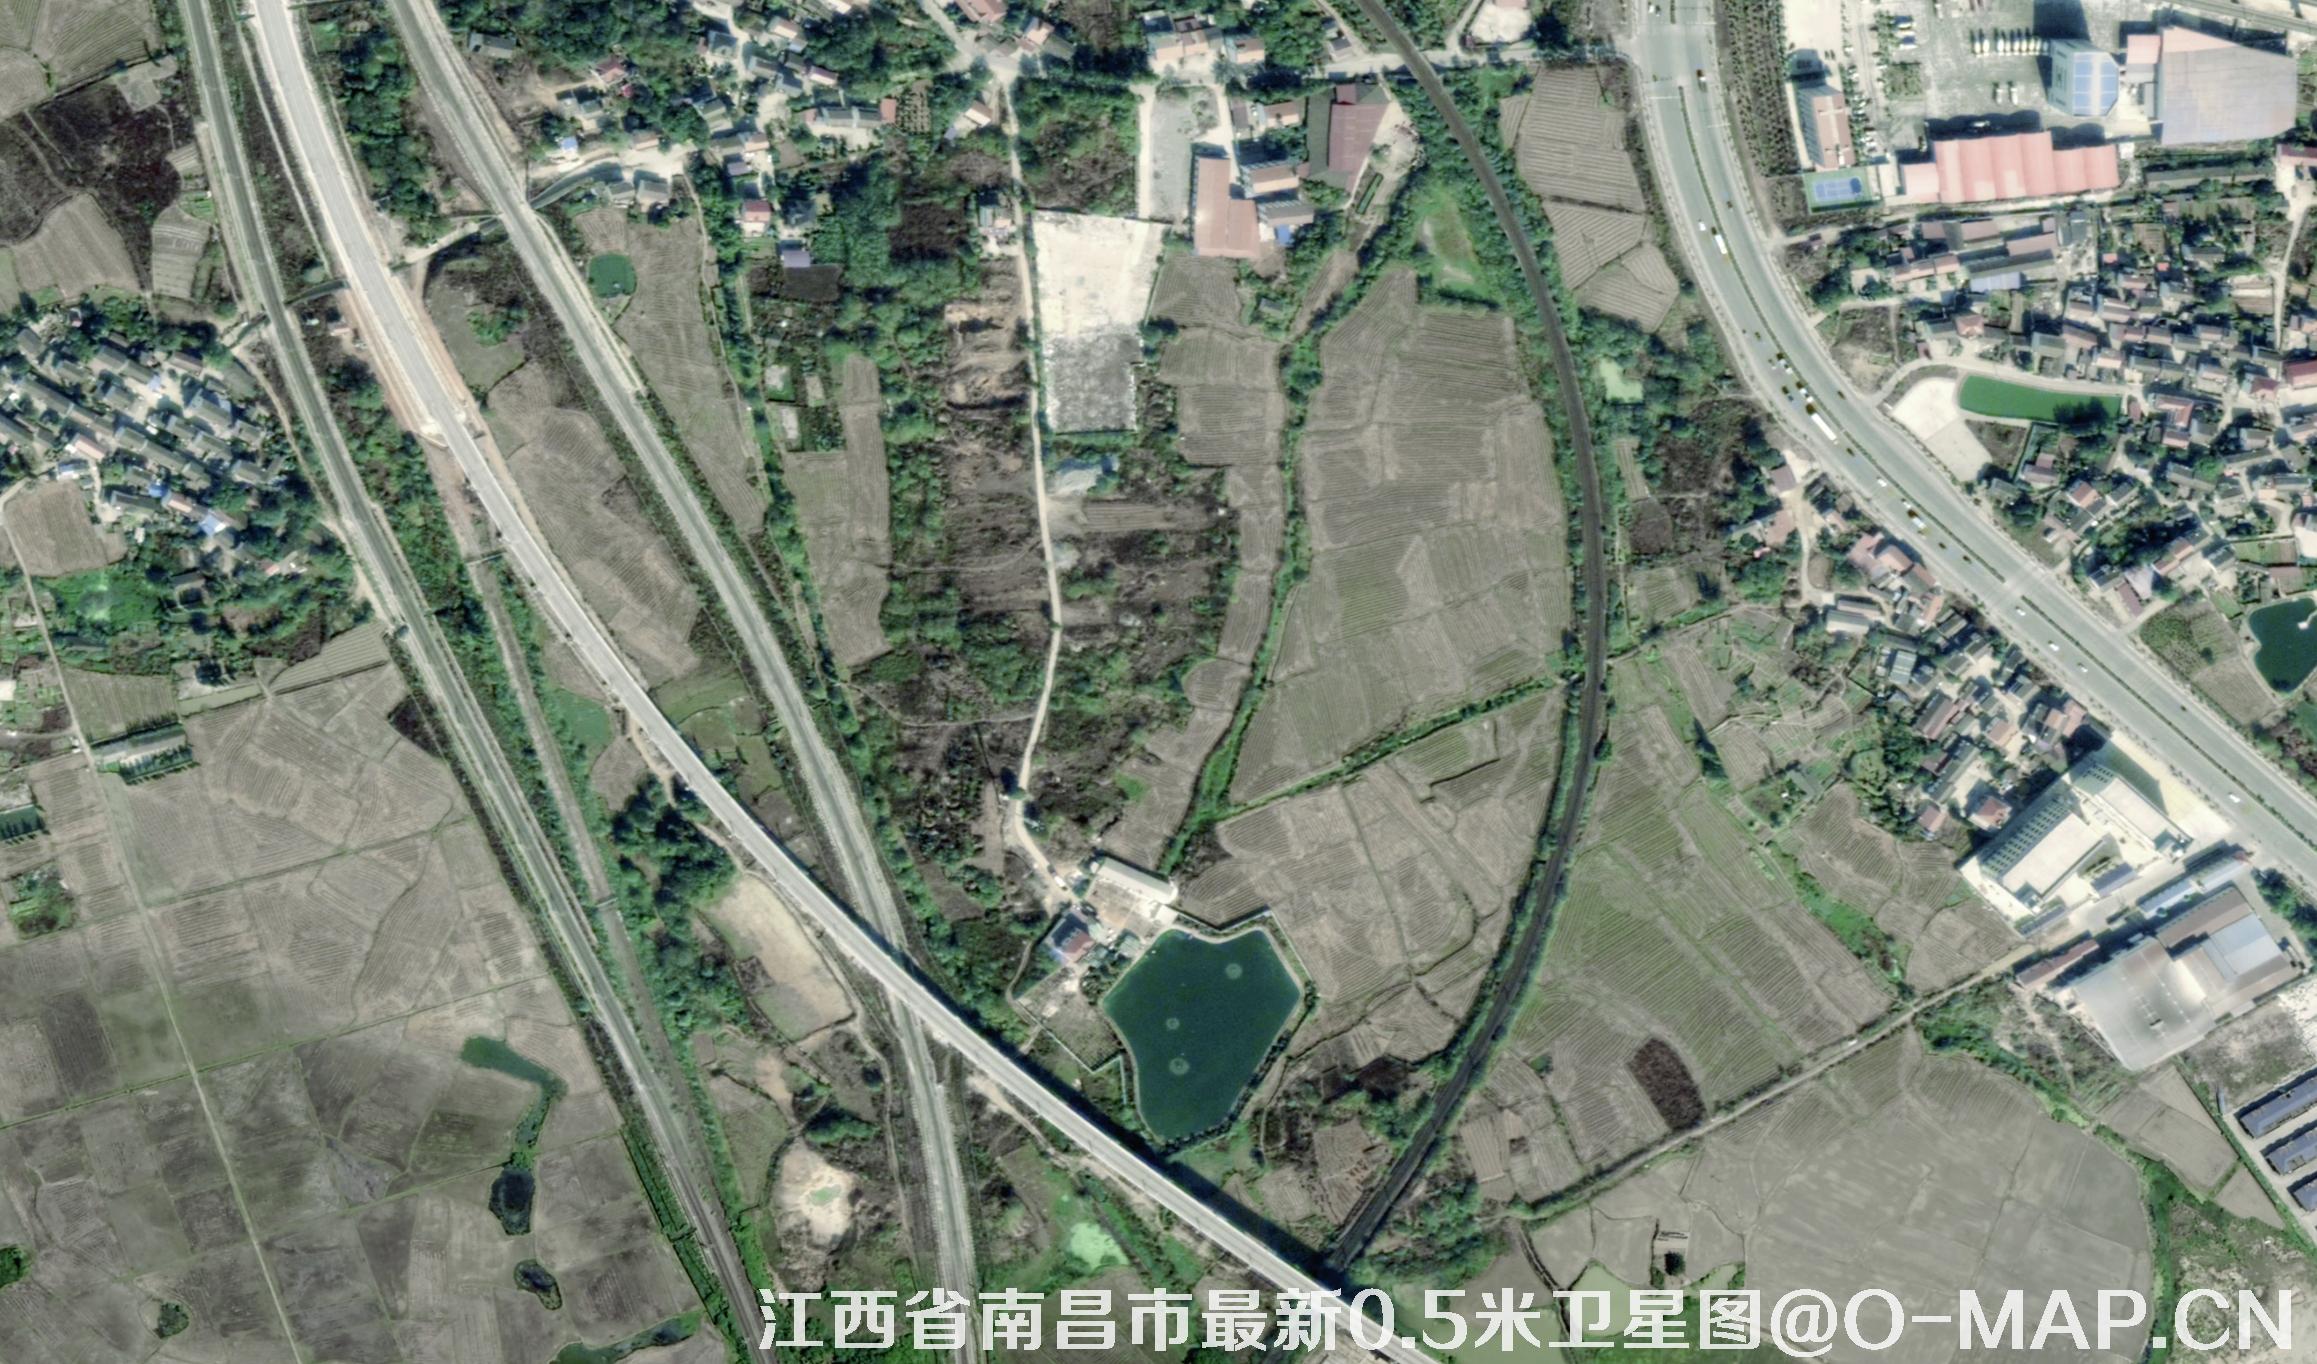 0.5米遥感卫星拍摄的江西省南昌市